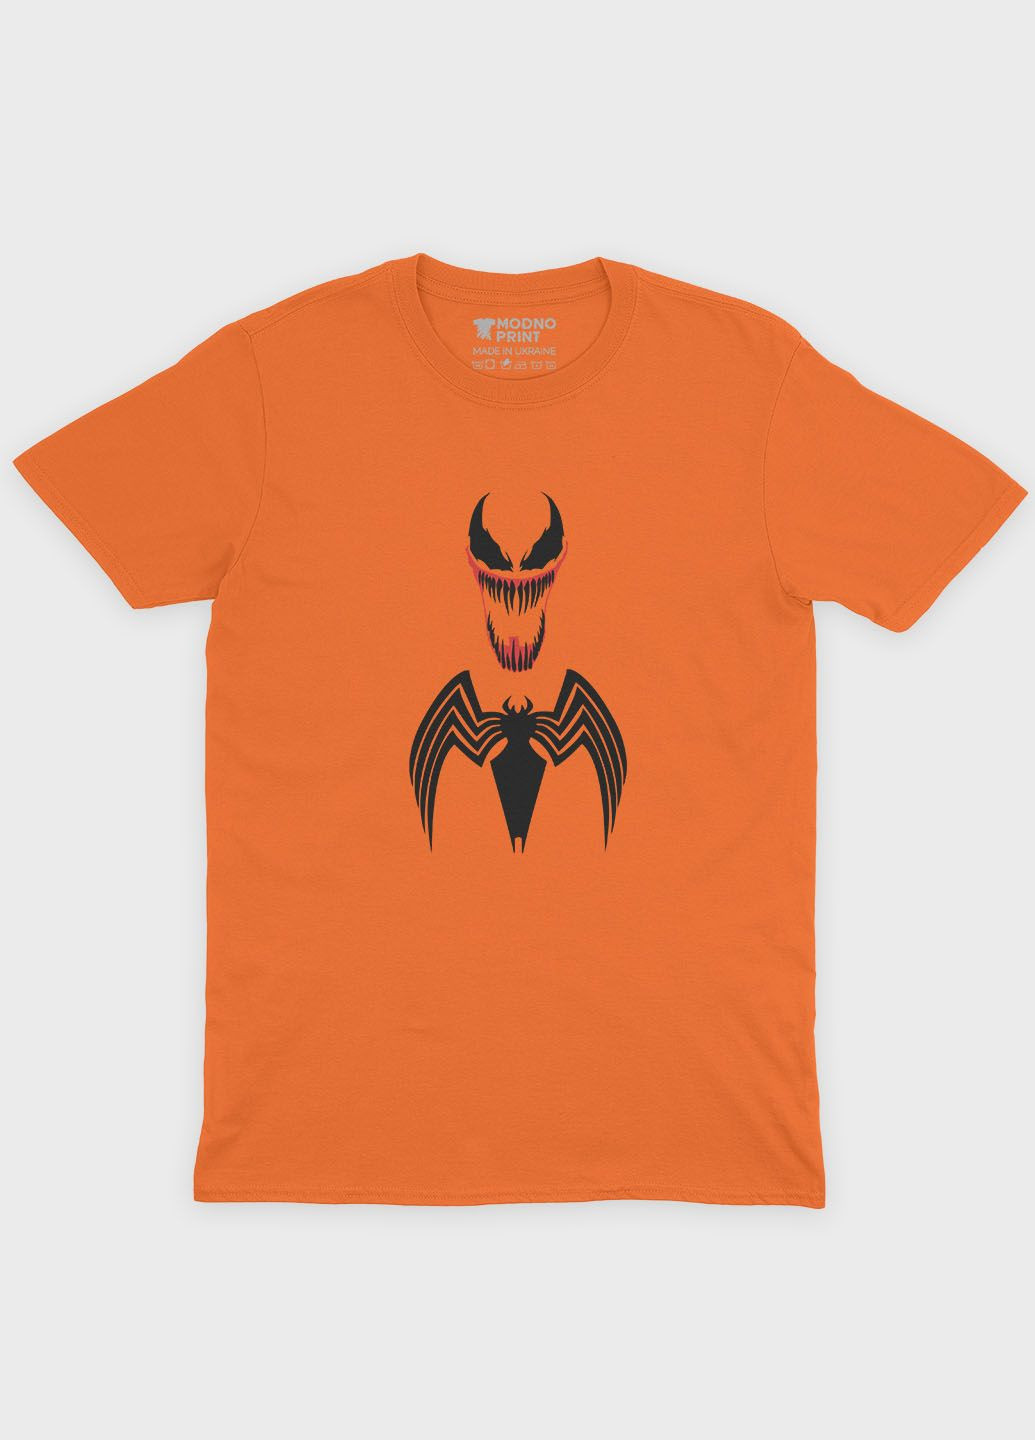 Оранжевая демисезонная футболка для мальчика с принтом супервора - веном (ts001-1-ora-006-013-008-b) Modno